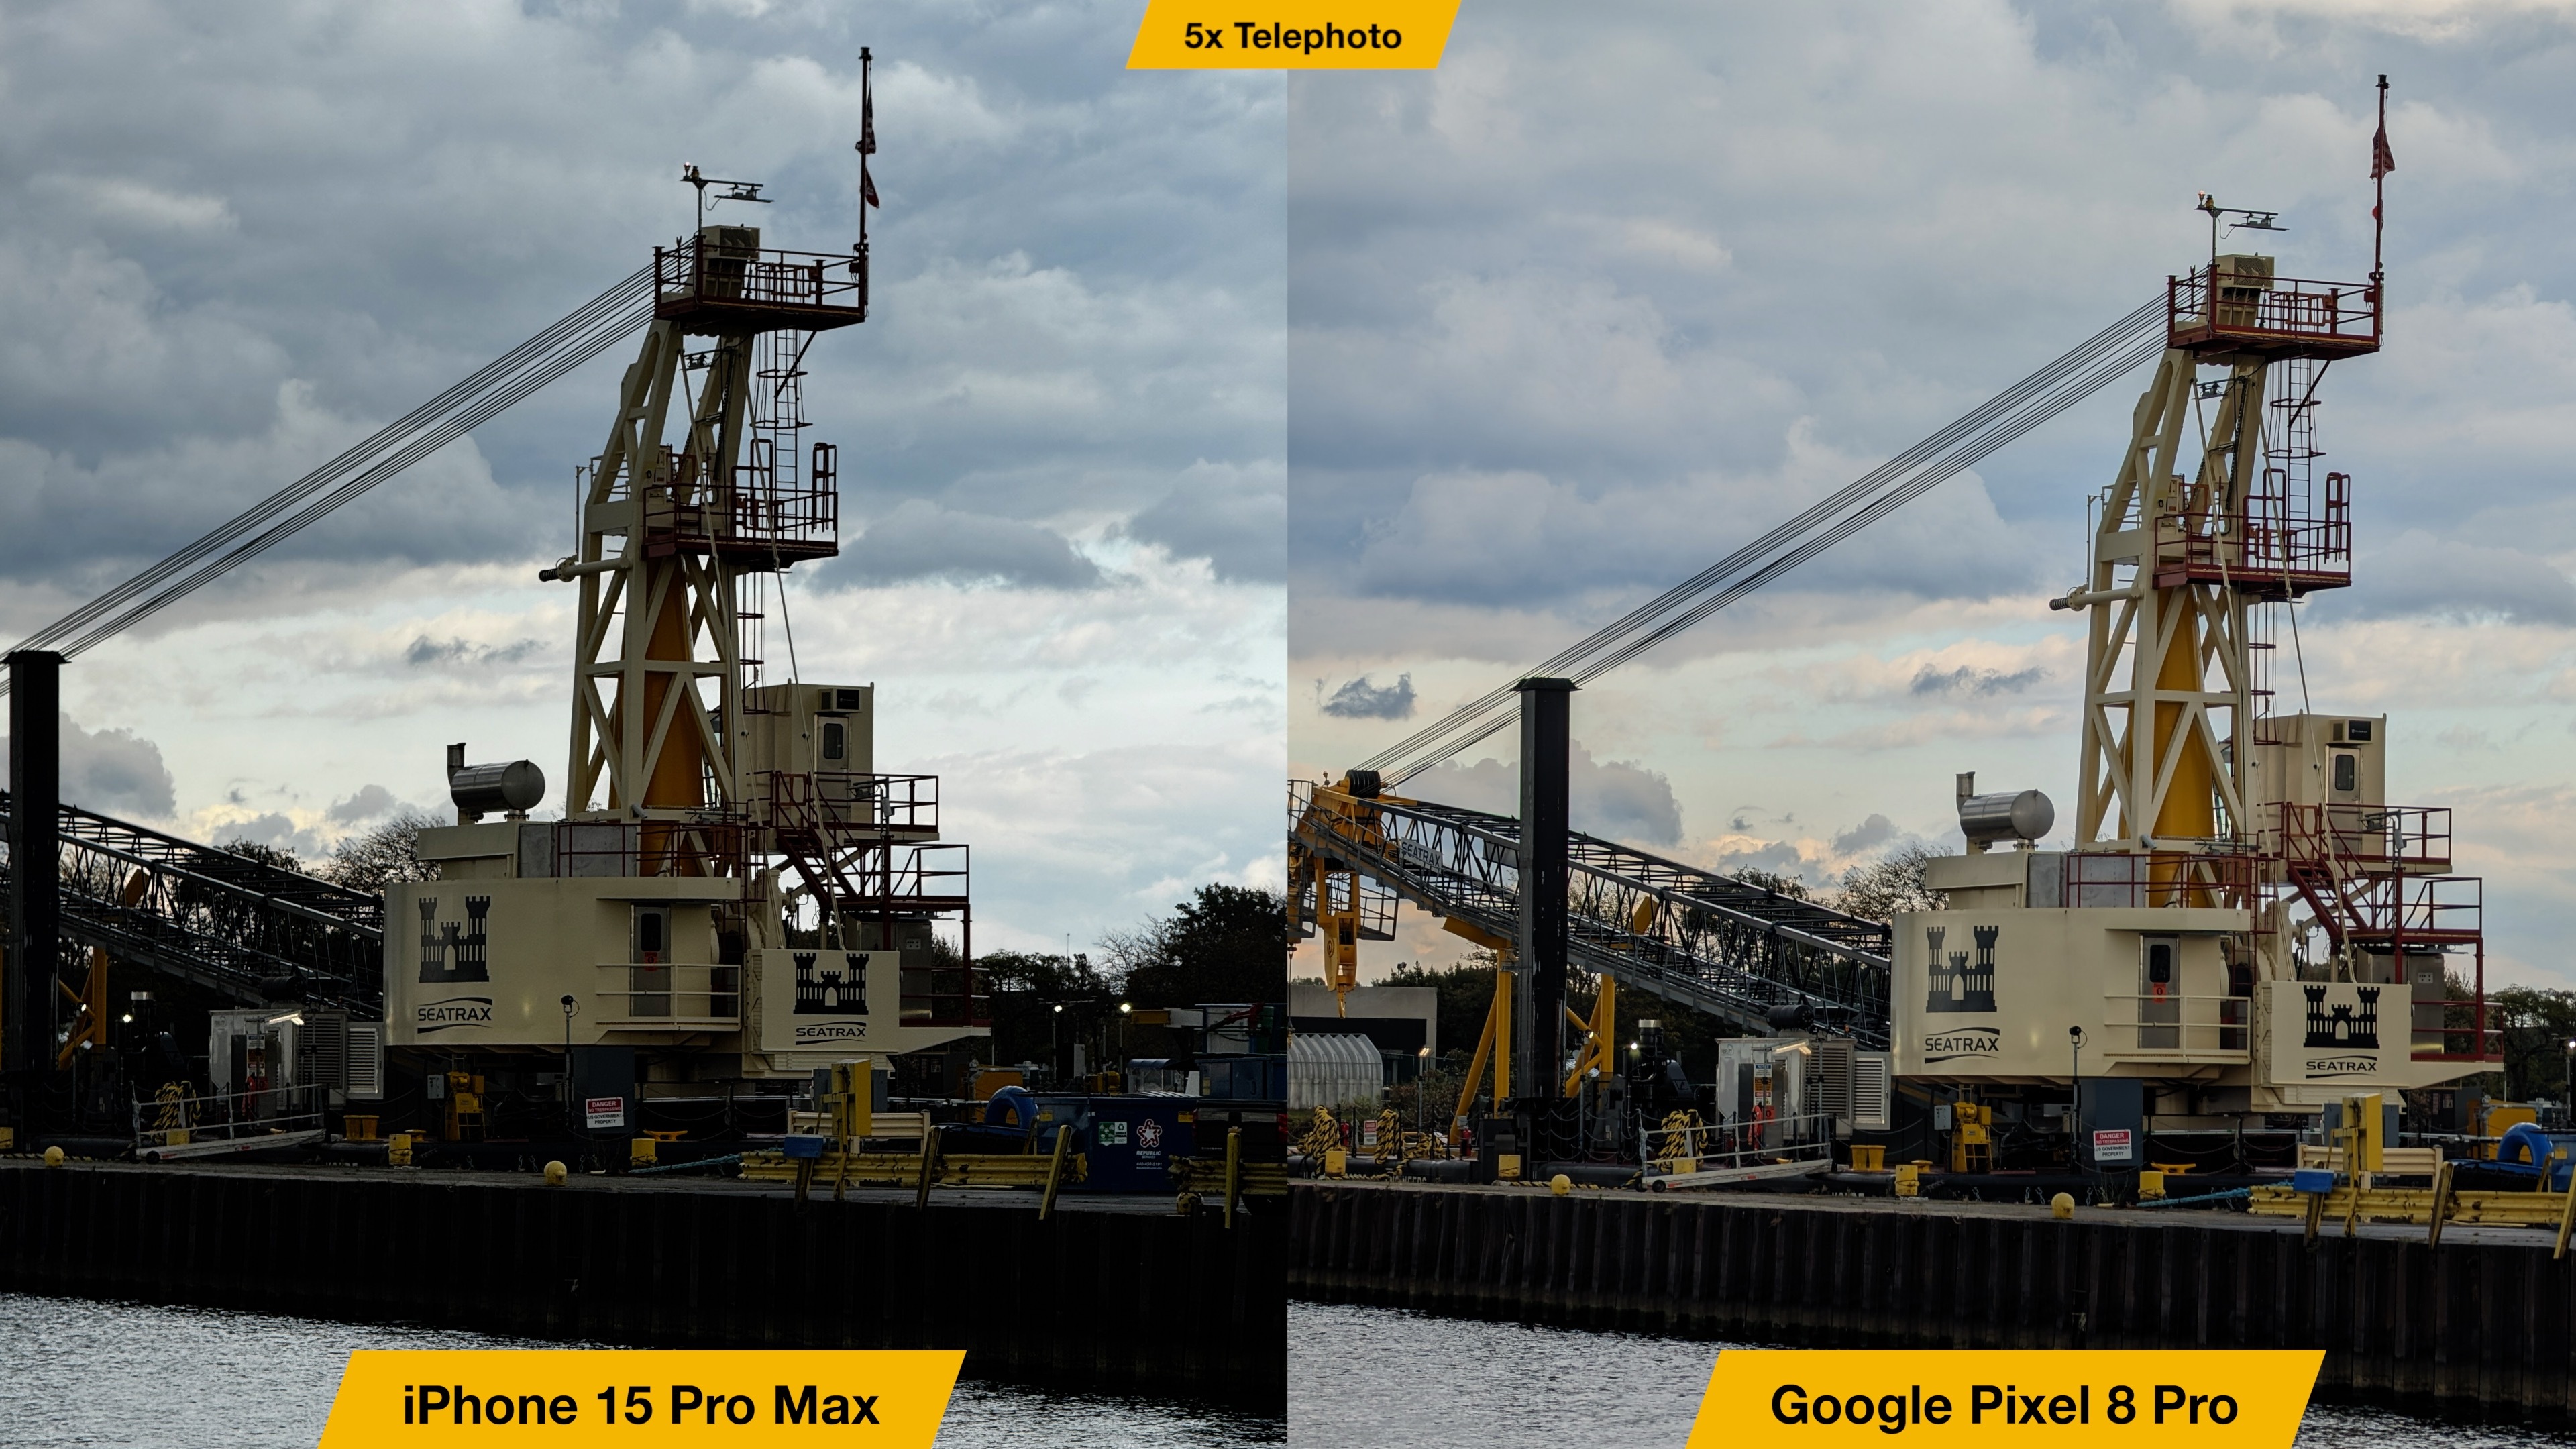 Camera Comparison: iPhone 15 Pro Max vs. Pixel 8 Pro